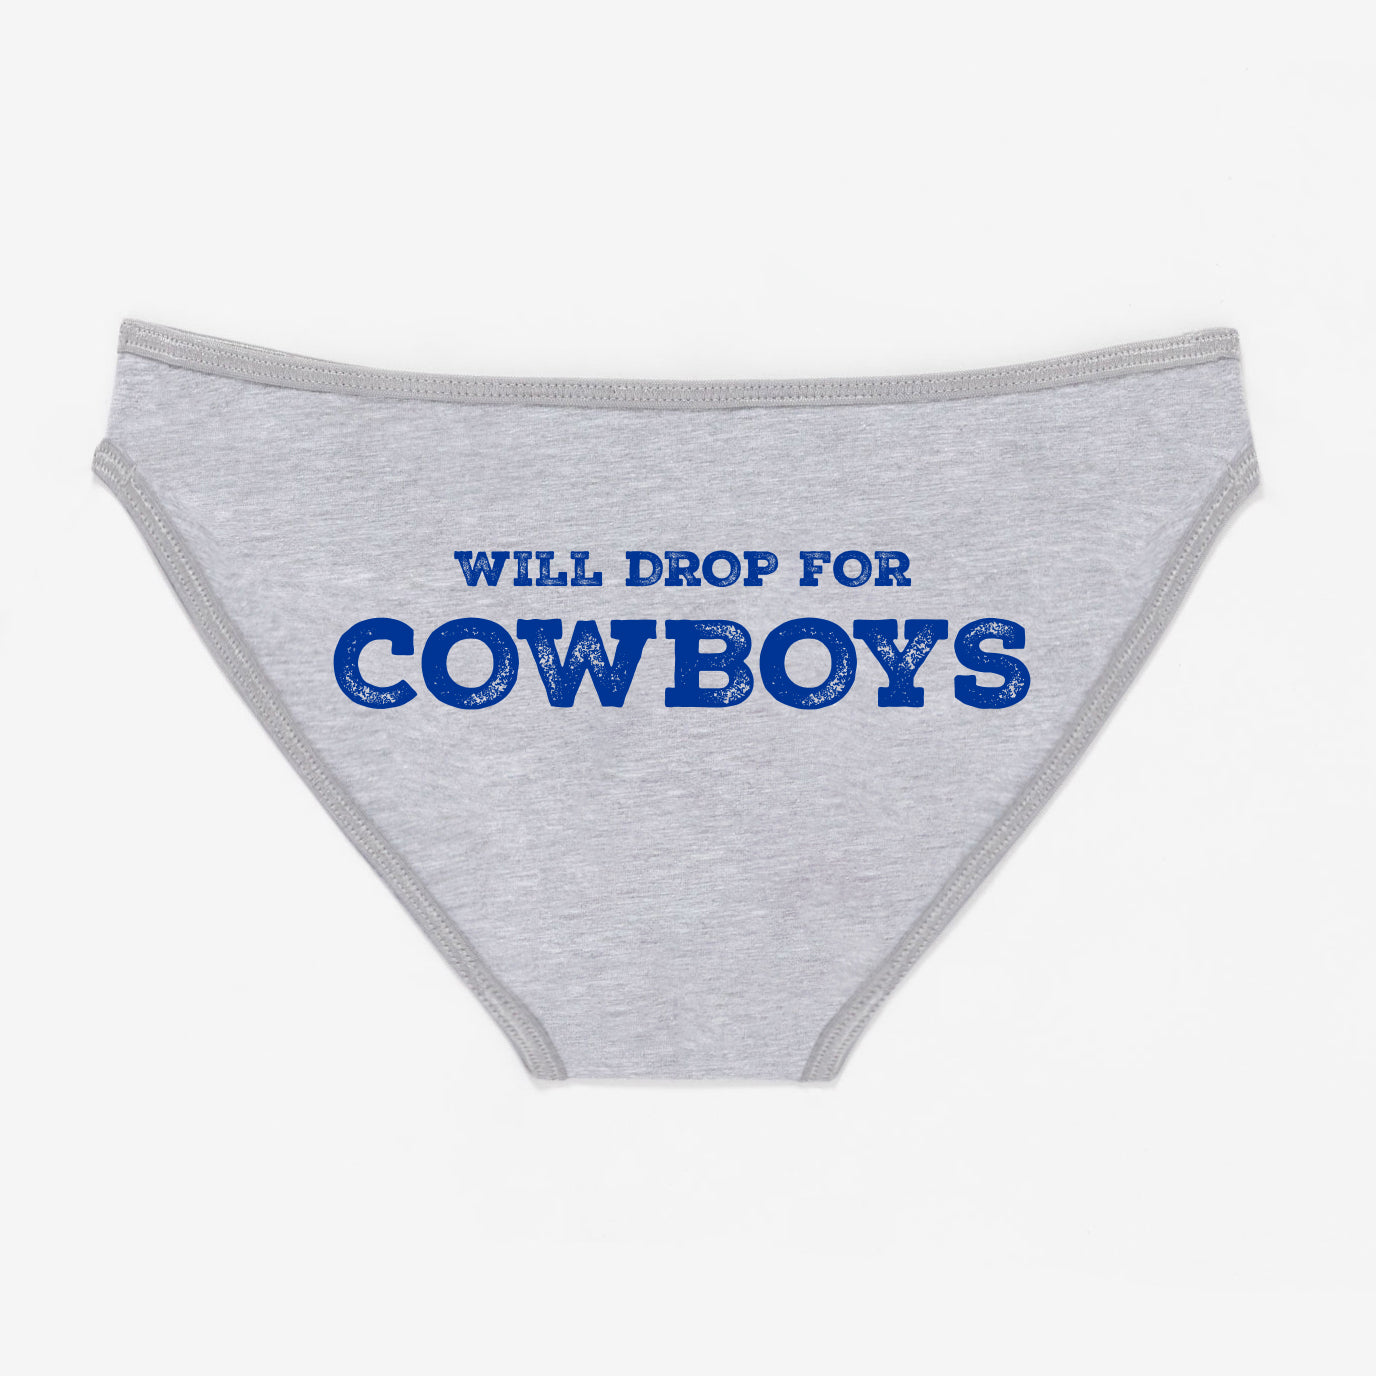 Will Drop For Cowboys Panties - Rally Panties